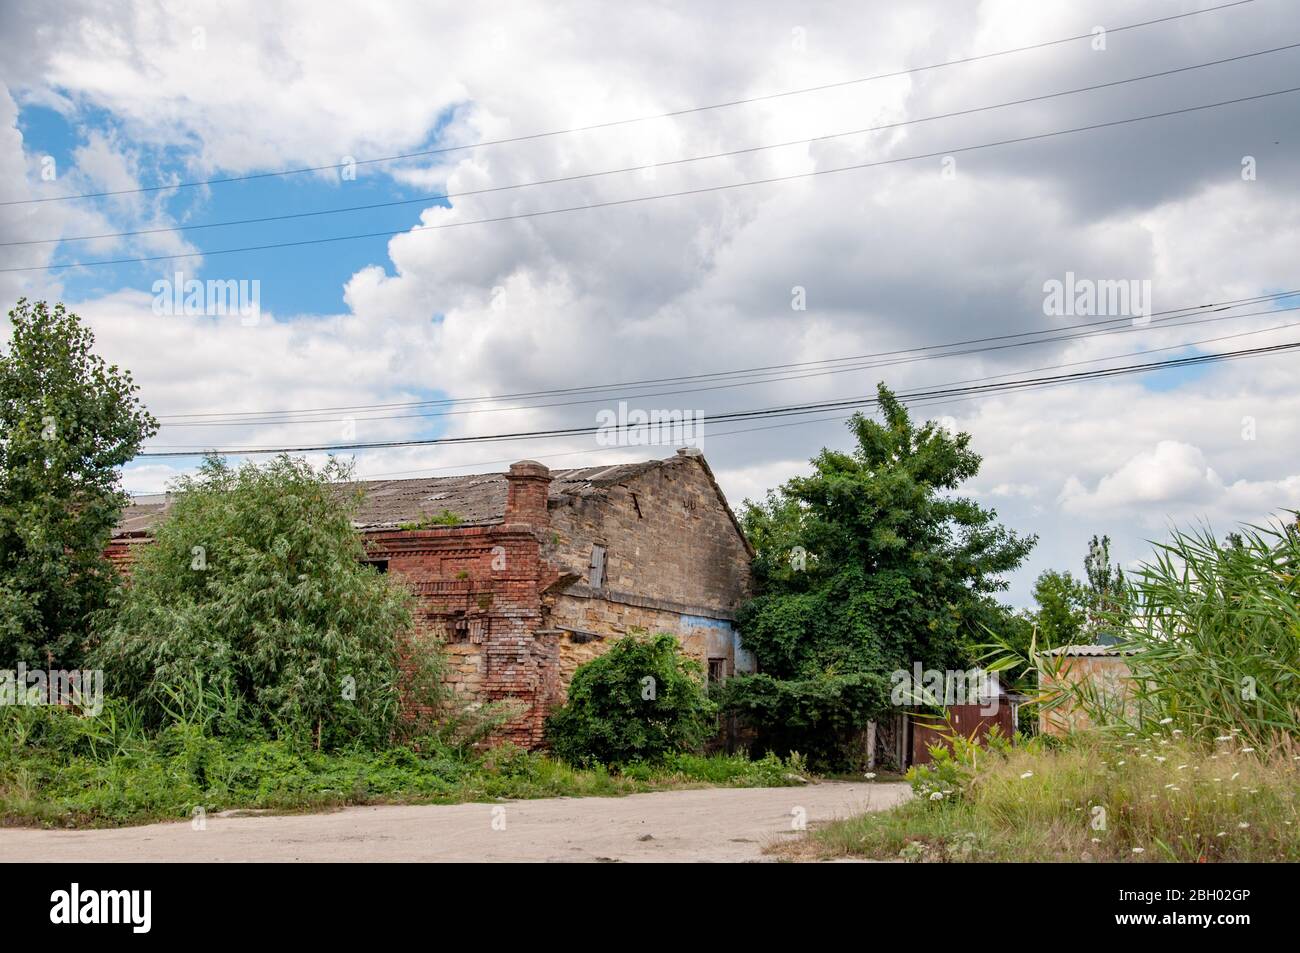 Verlassene Haus mit baufälligen Ziegelmauern, überwuchert von Kletterpflanzen und grünen Bäumen. Wolkiger Himmel über Dorf Szene in der Ukraine Landschaft. Stockfoto